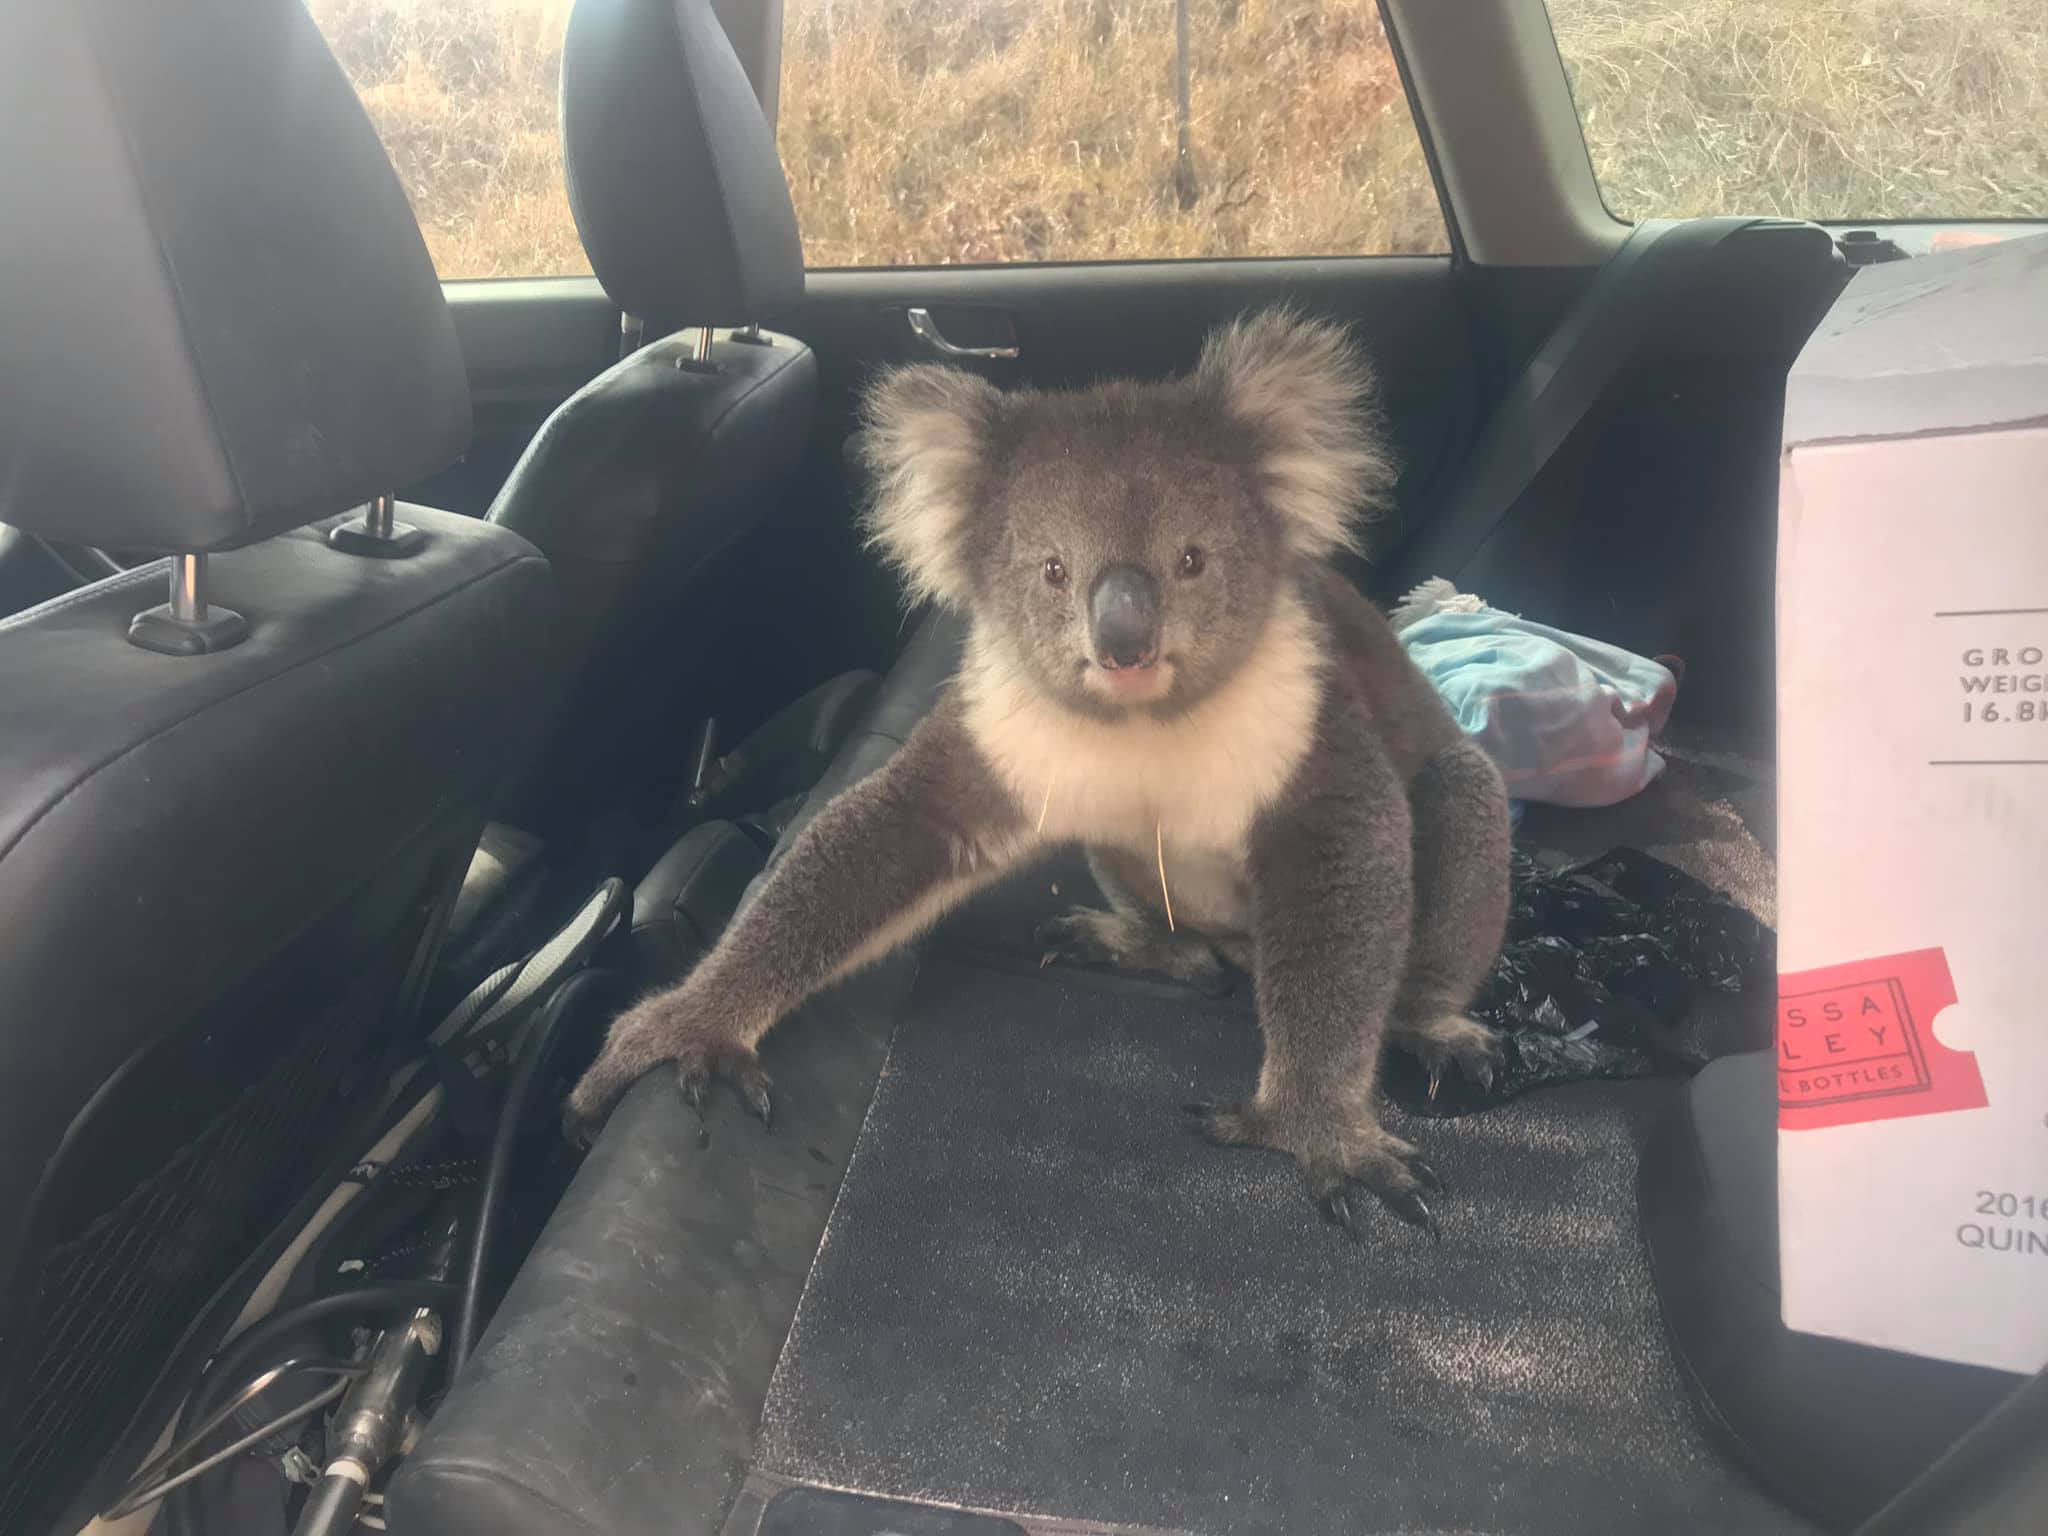 Fotos y videos: Koala acalorado se refugia en carro con aire acondicionado